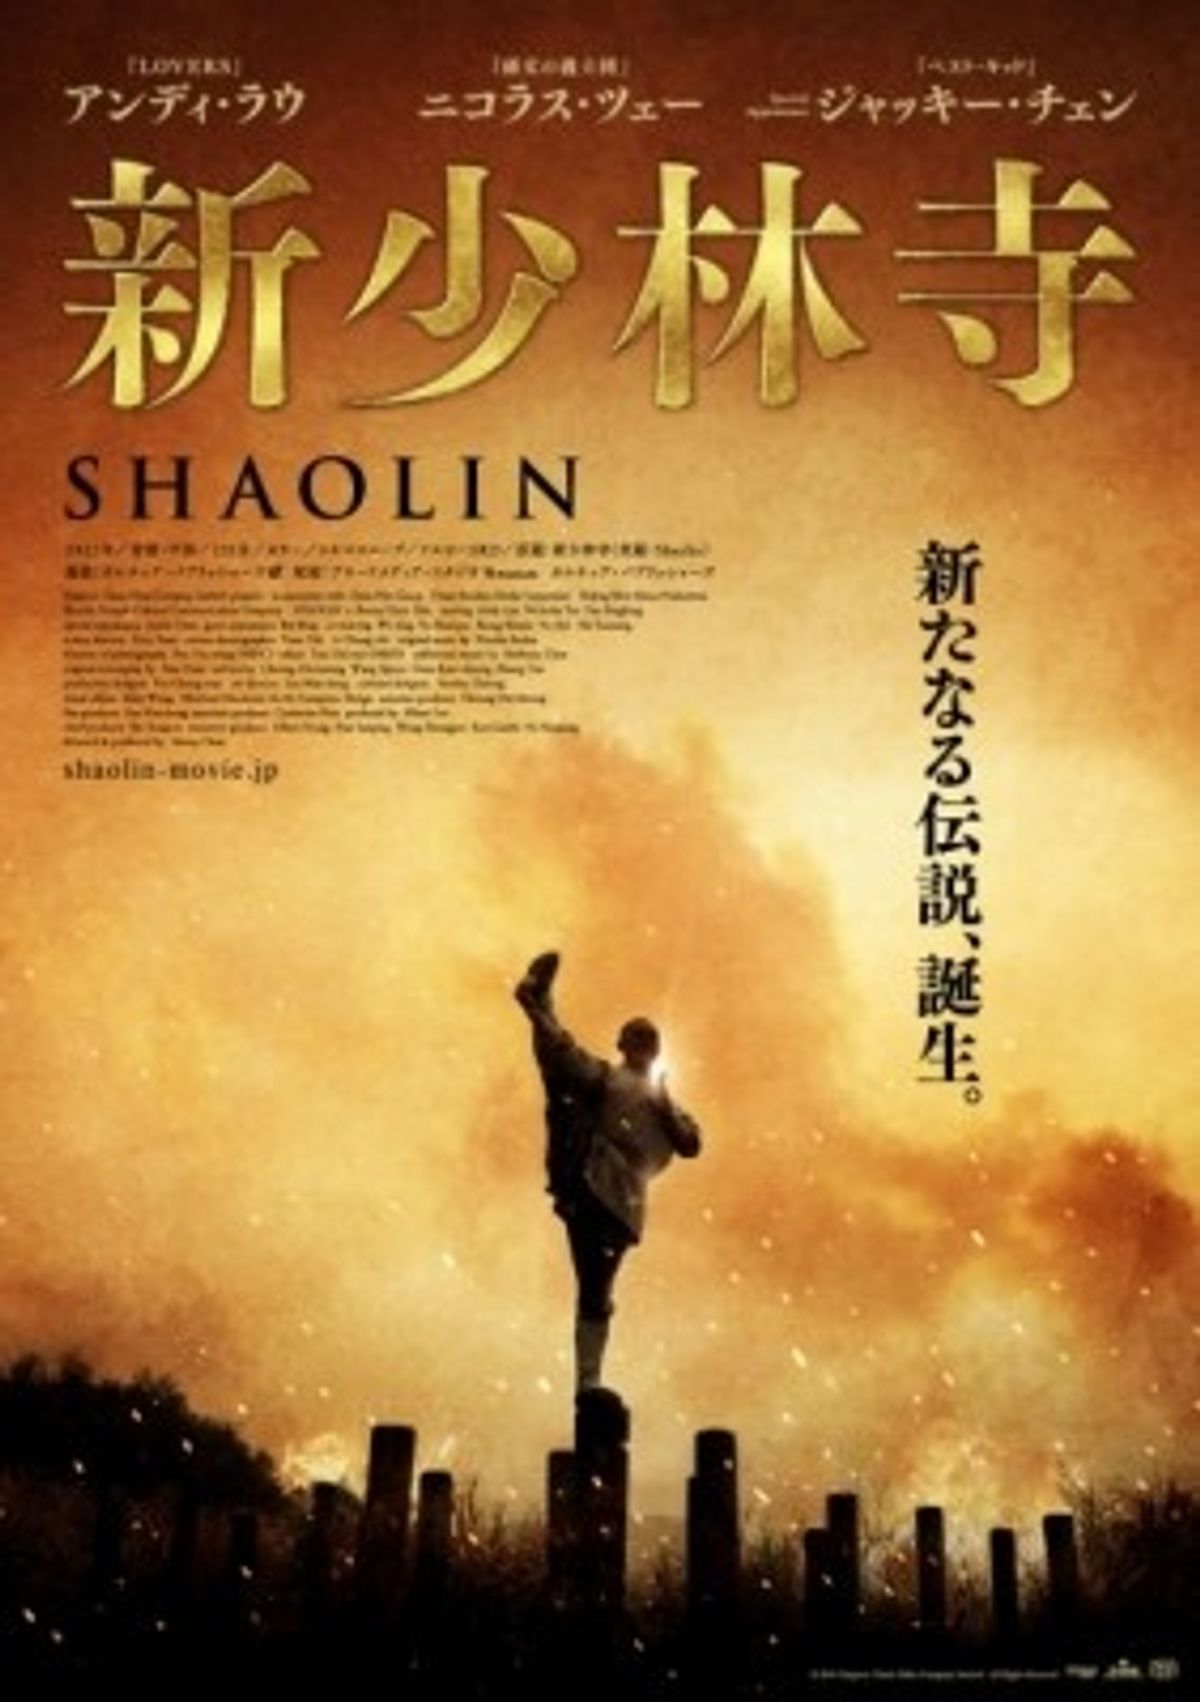 ジャッキー・チェン出演99作目『新少林寺 SHAOLIN』が新しい少林寺の